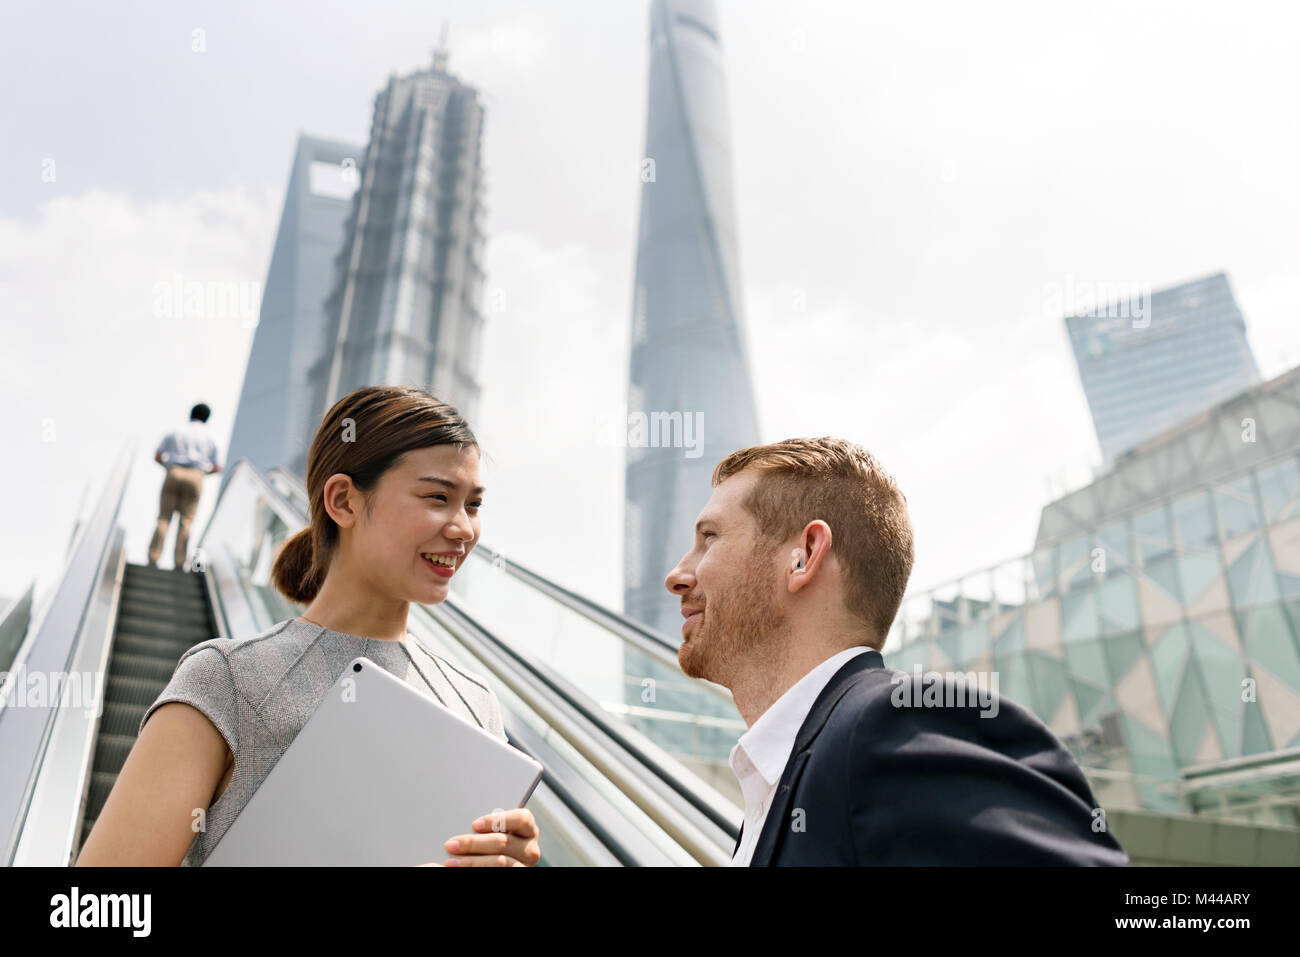 Junge Unternehmer und Frau Fahrtreppe in Shanghai Financial Center, Shanghai, China Stockfoto